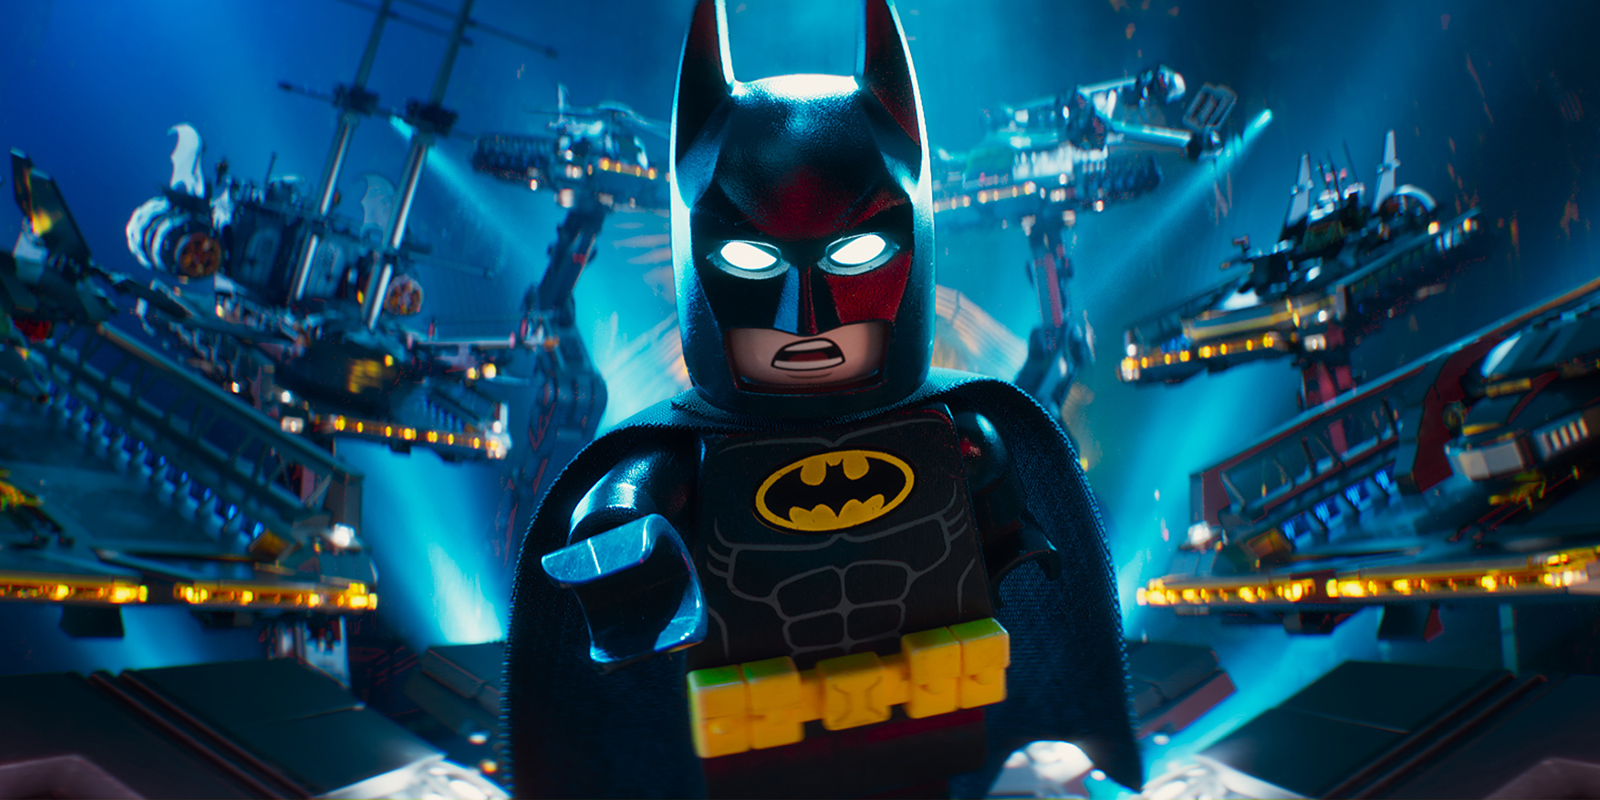 De Lego Batman Film Nederlandse Versie Kijk Nu Online Bij Pathé Thuis 